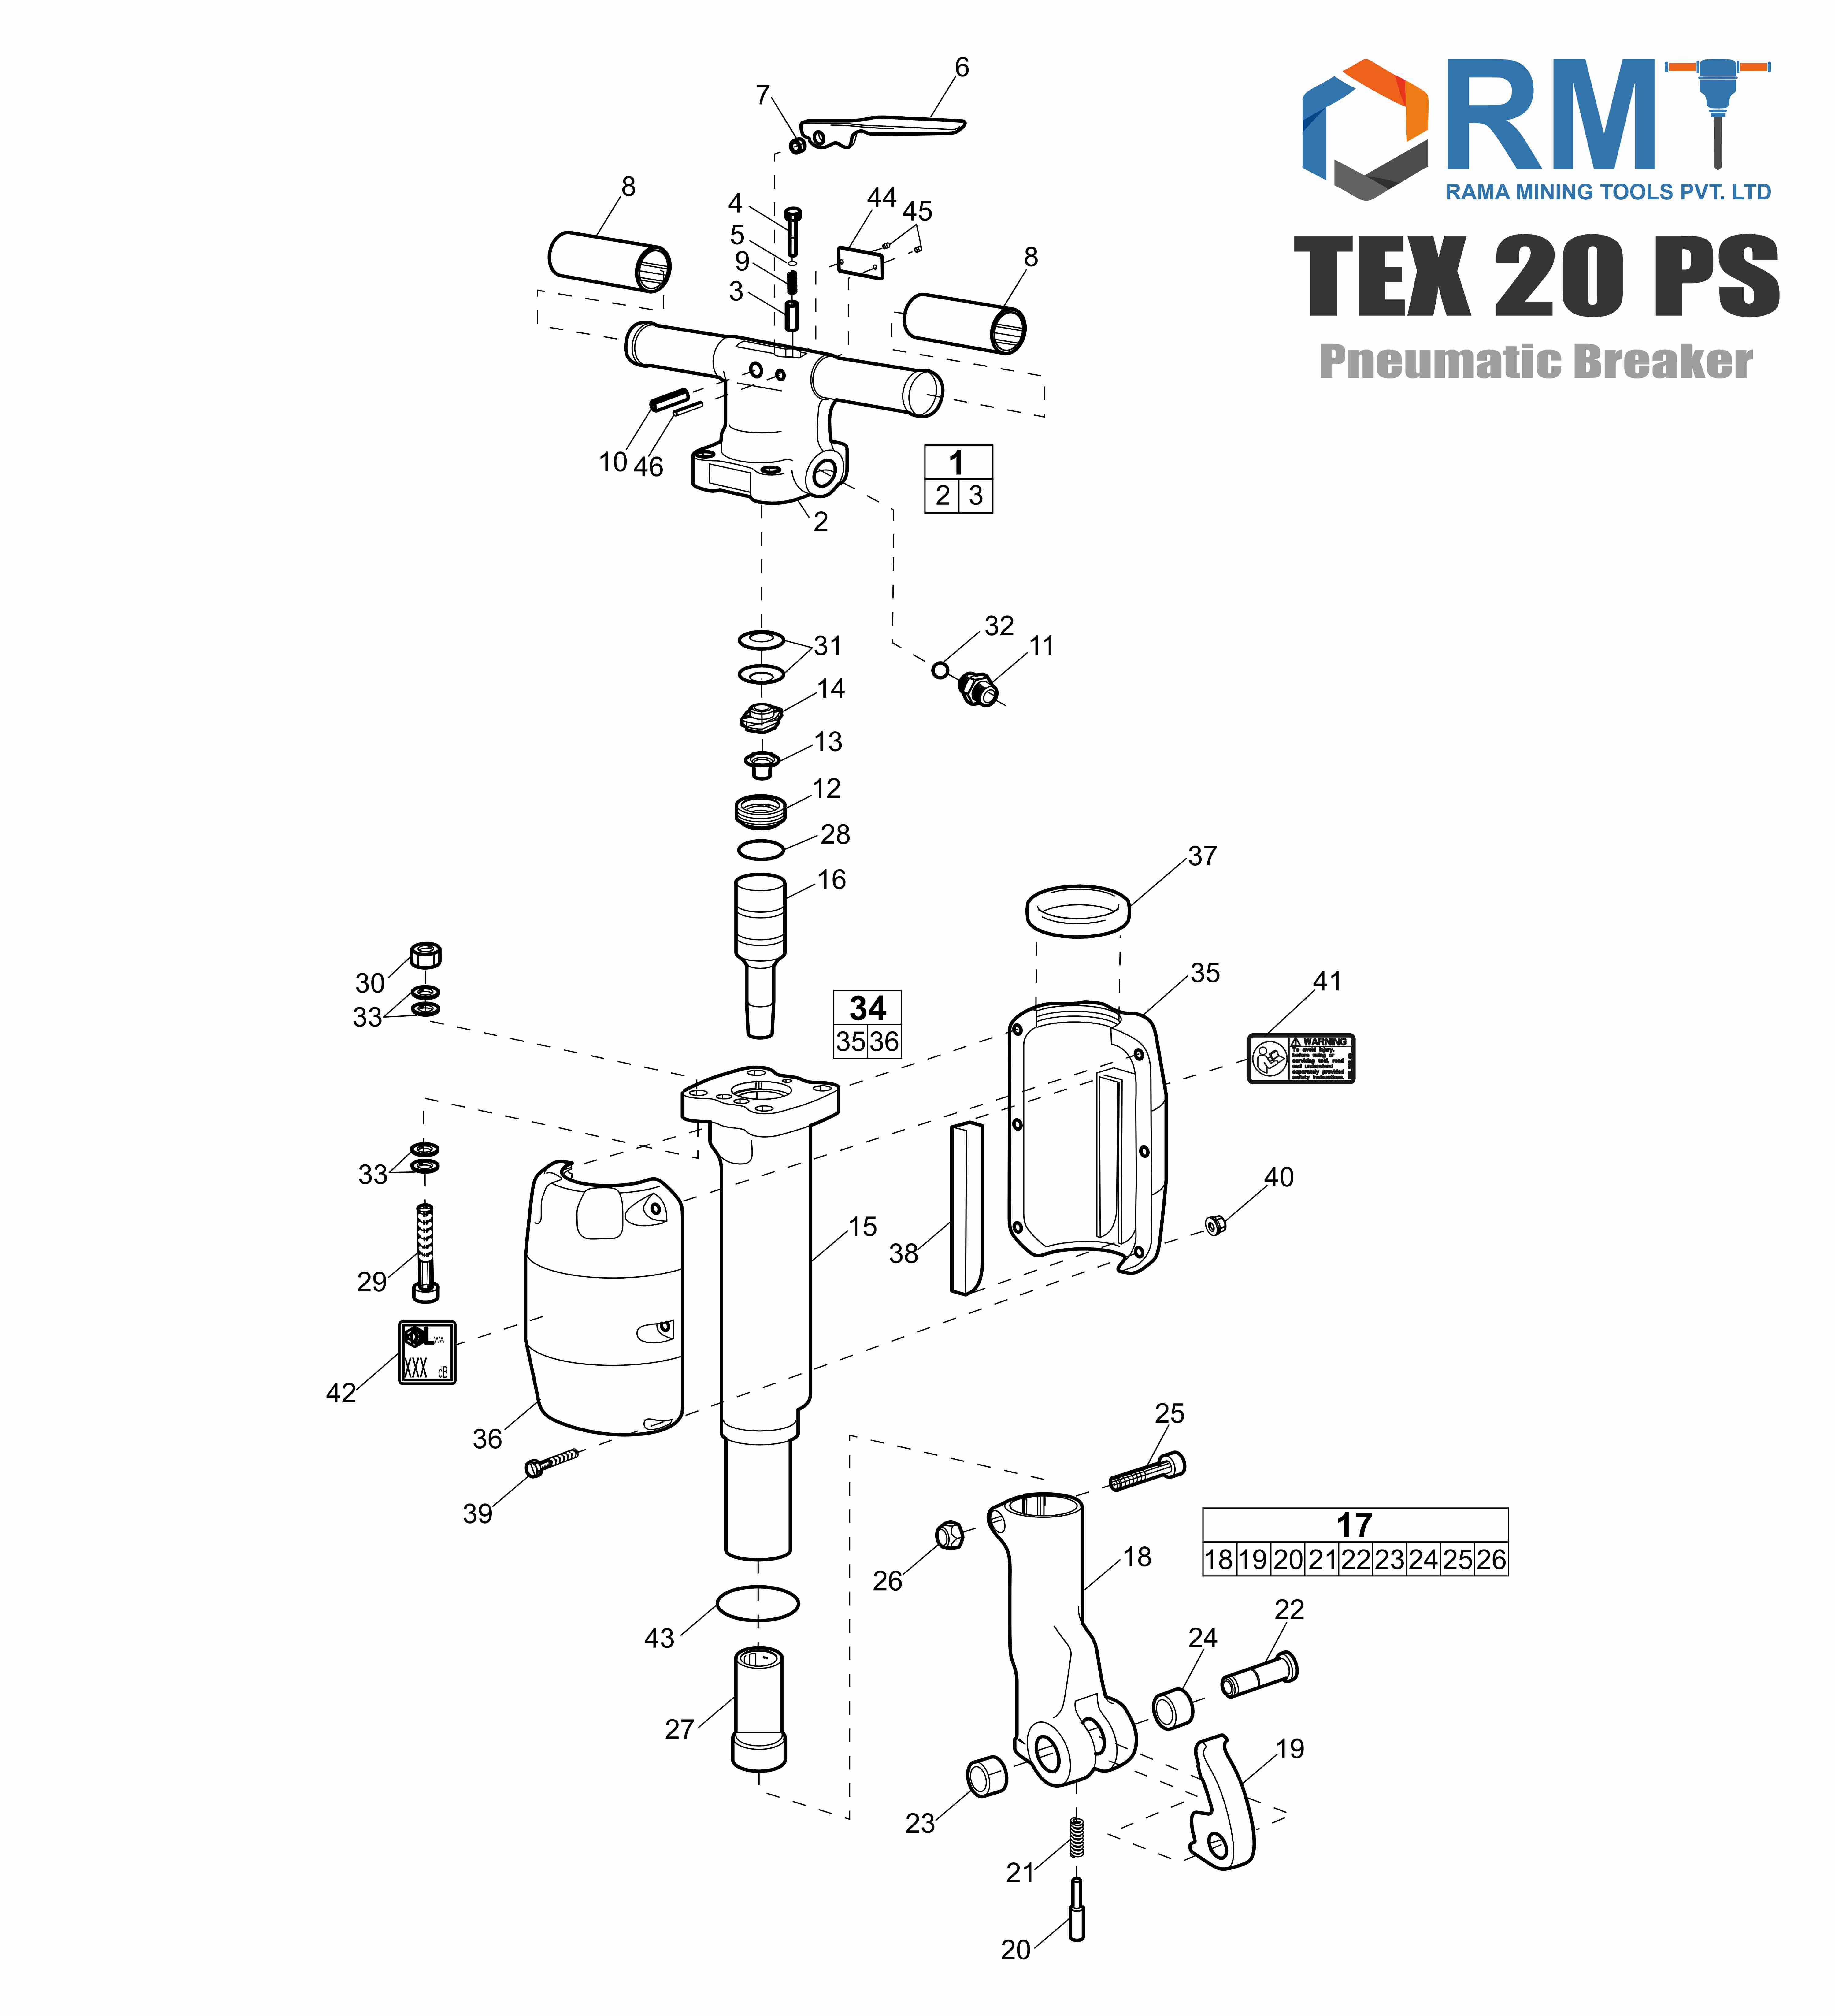 TEX 20 PS - Pneumatic Breaker